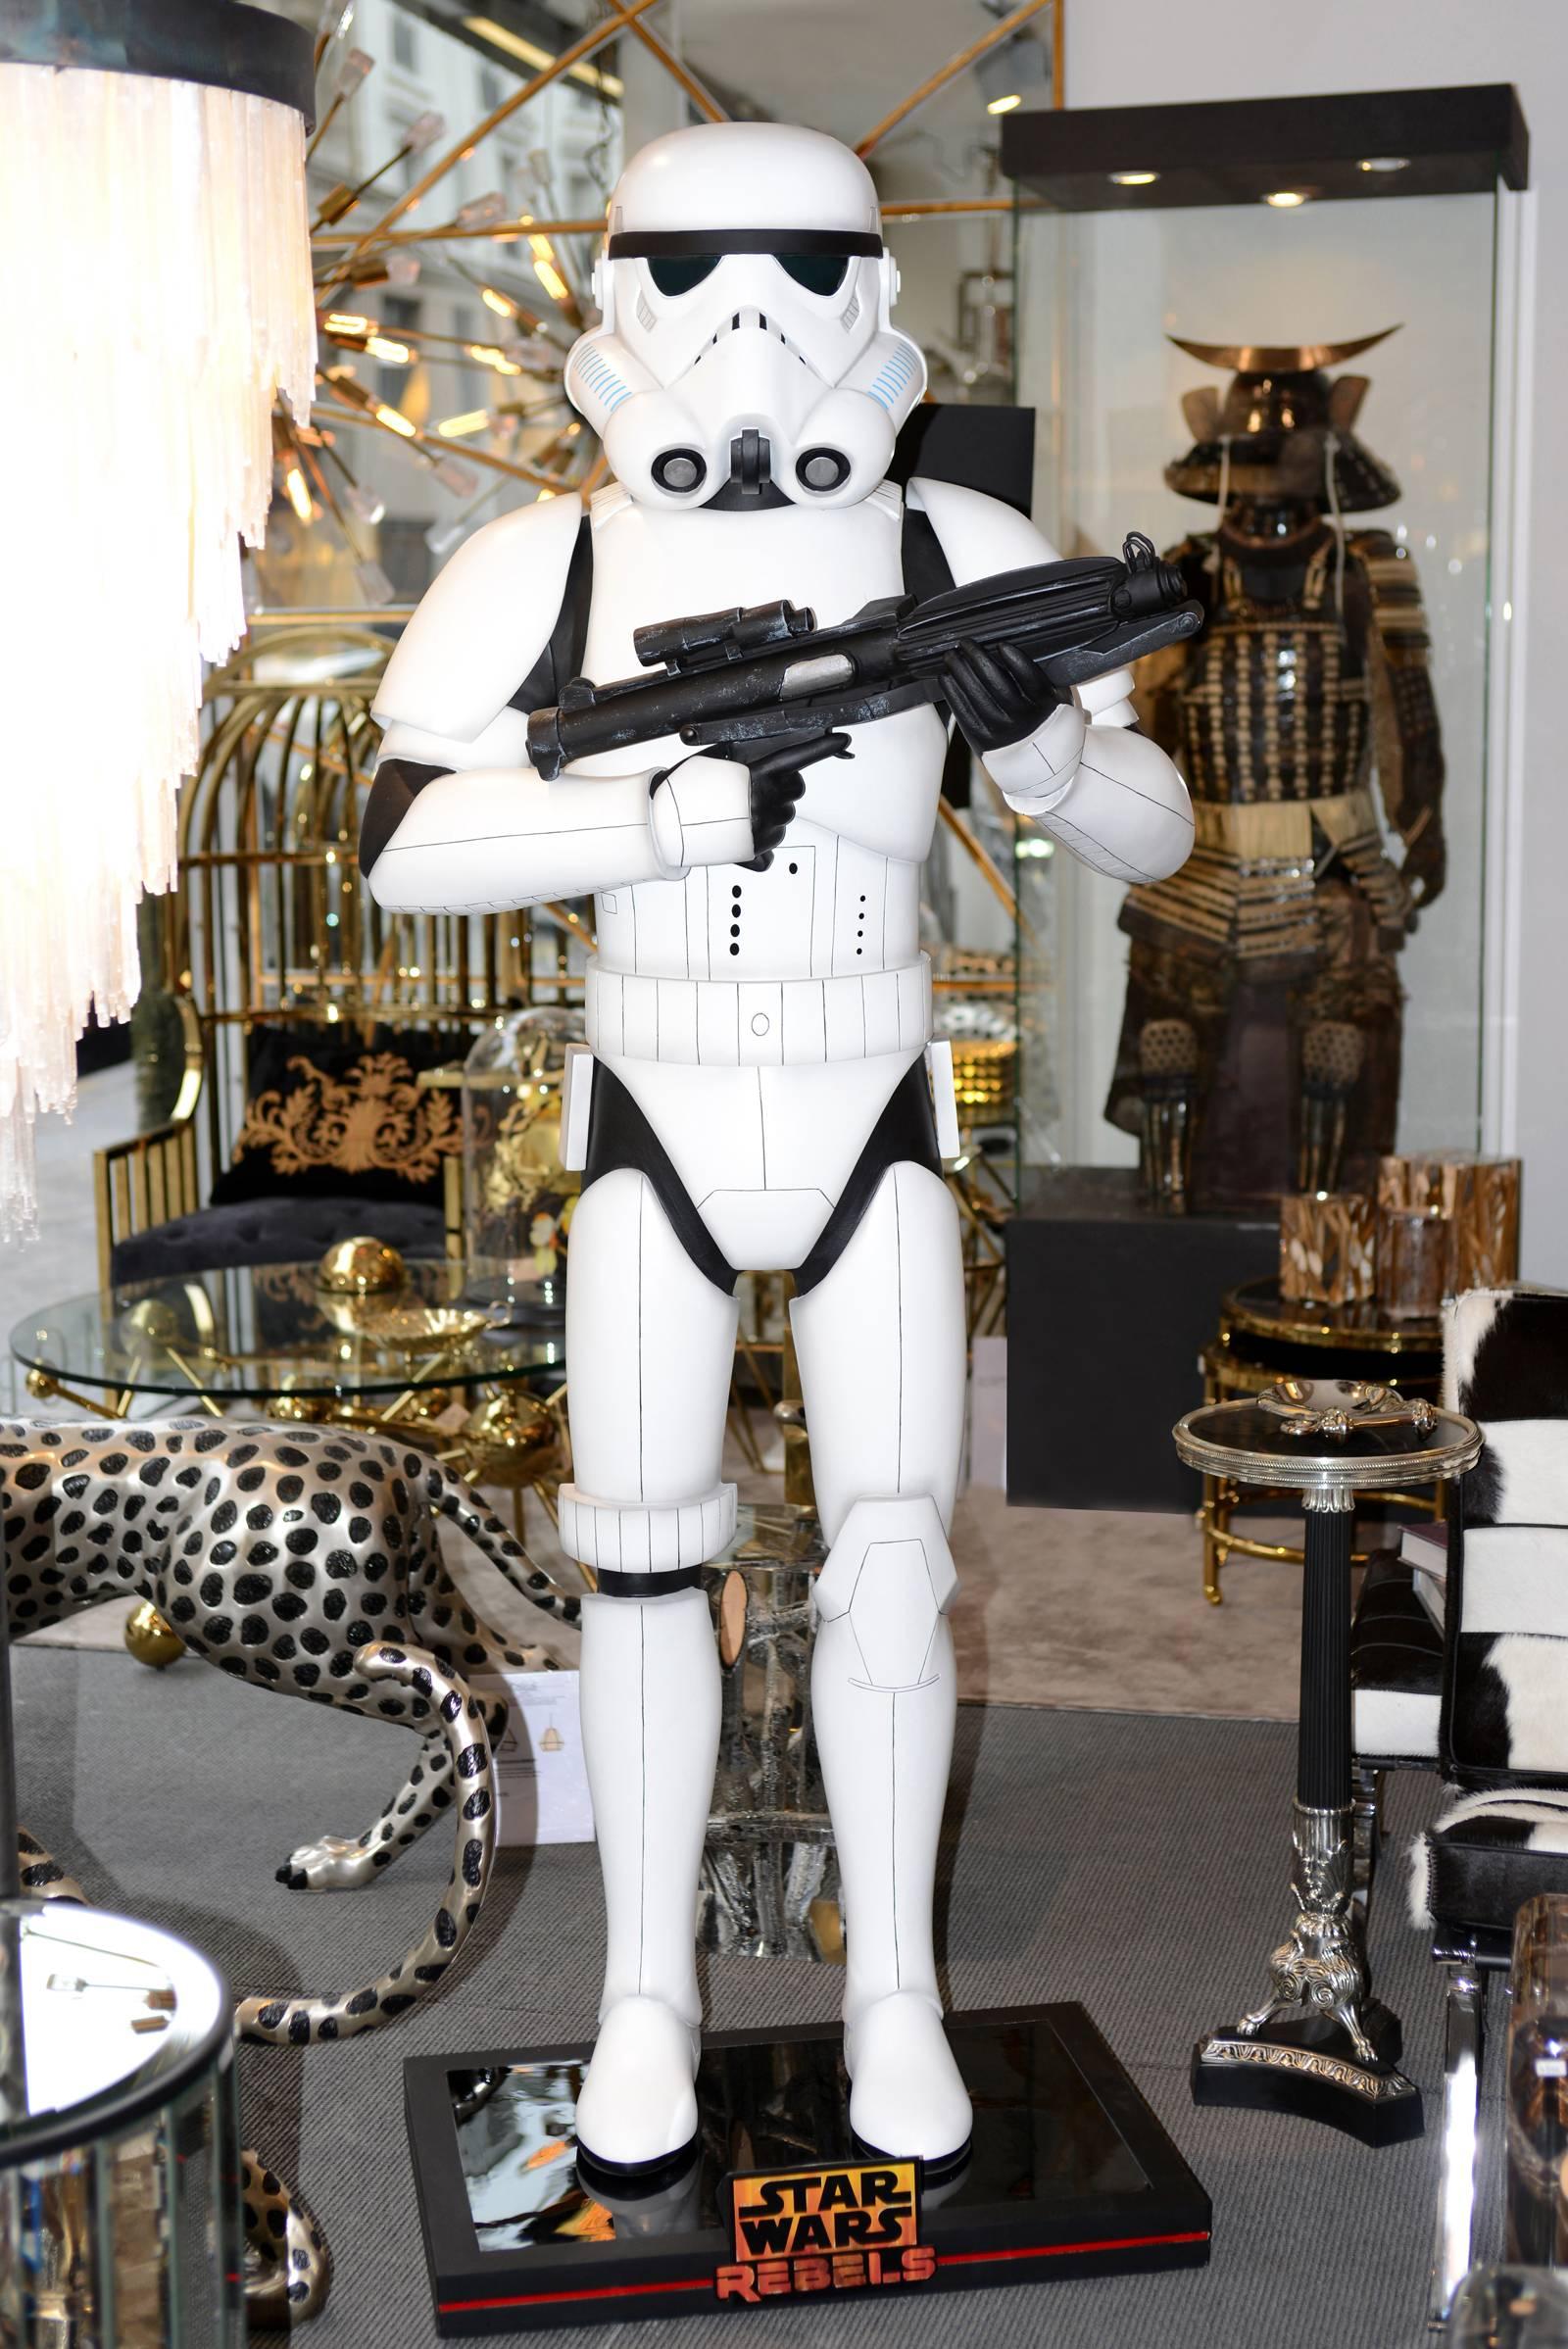 Stormtrooper mit gebogenem Arm Lebensgröße Star Wars, lizenzierte Figur,
Lucas Film, in limitierter Auflage von 333 Stück. In Fiberglas.

 